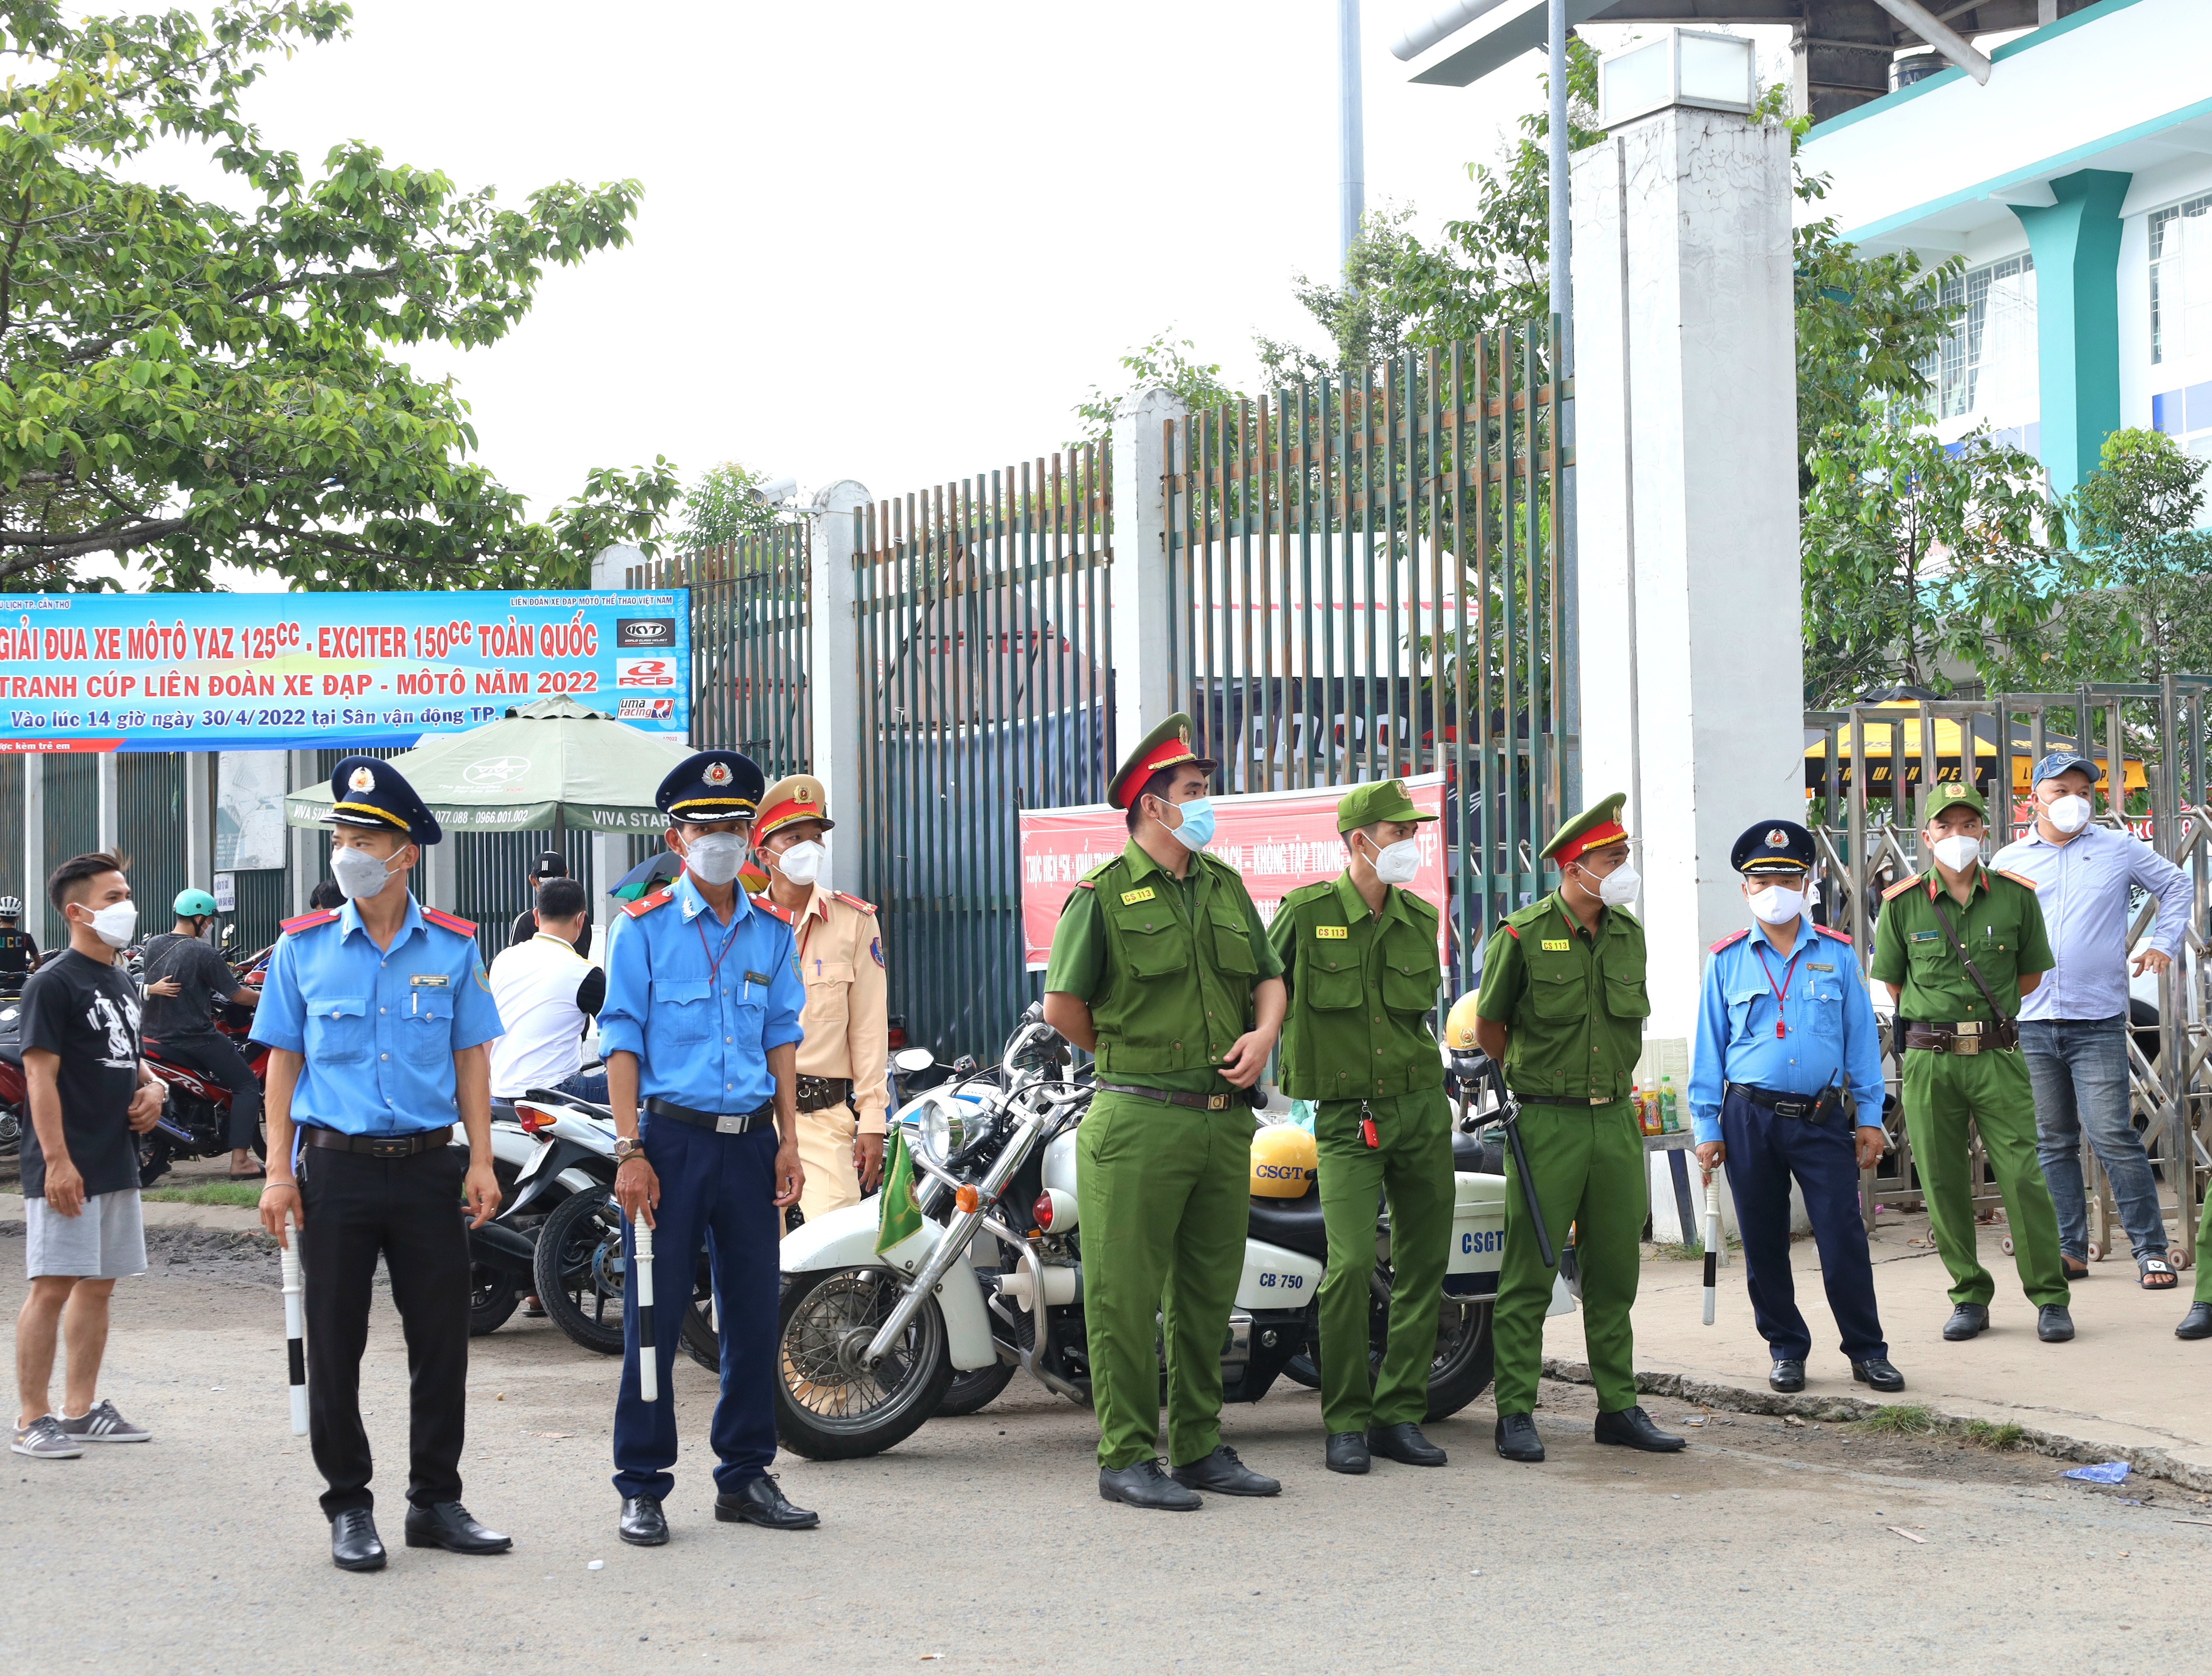 Lực lượng Công an và Thanh tra Giao thông (thuộc Sở GTVT TP.Cần Thơ) bảo đảm an ninh trật tự, an toàn giao thông tại sân vận động Cần Thơ.